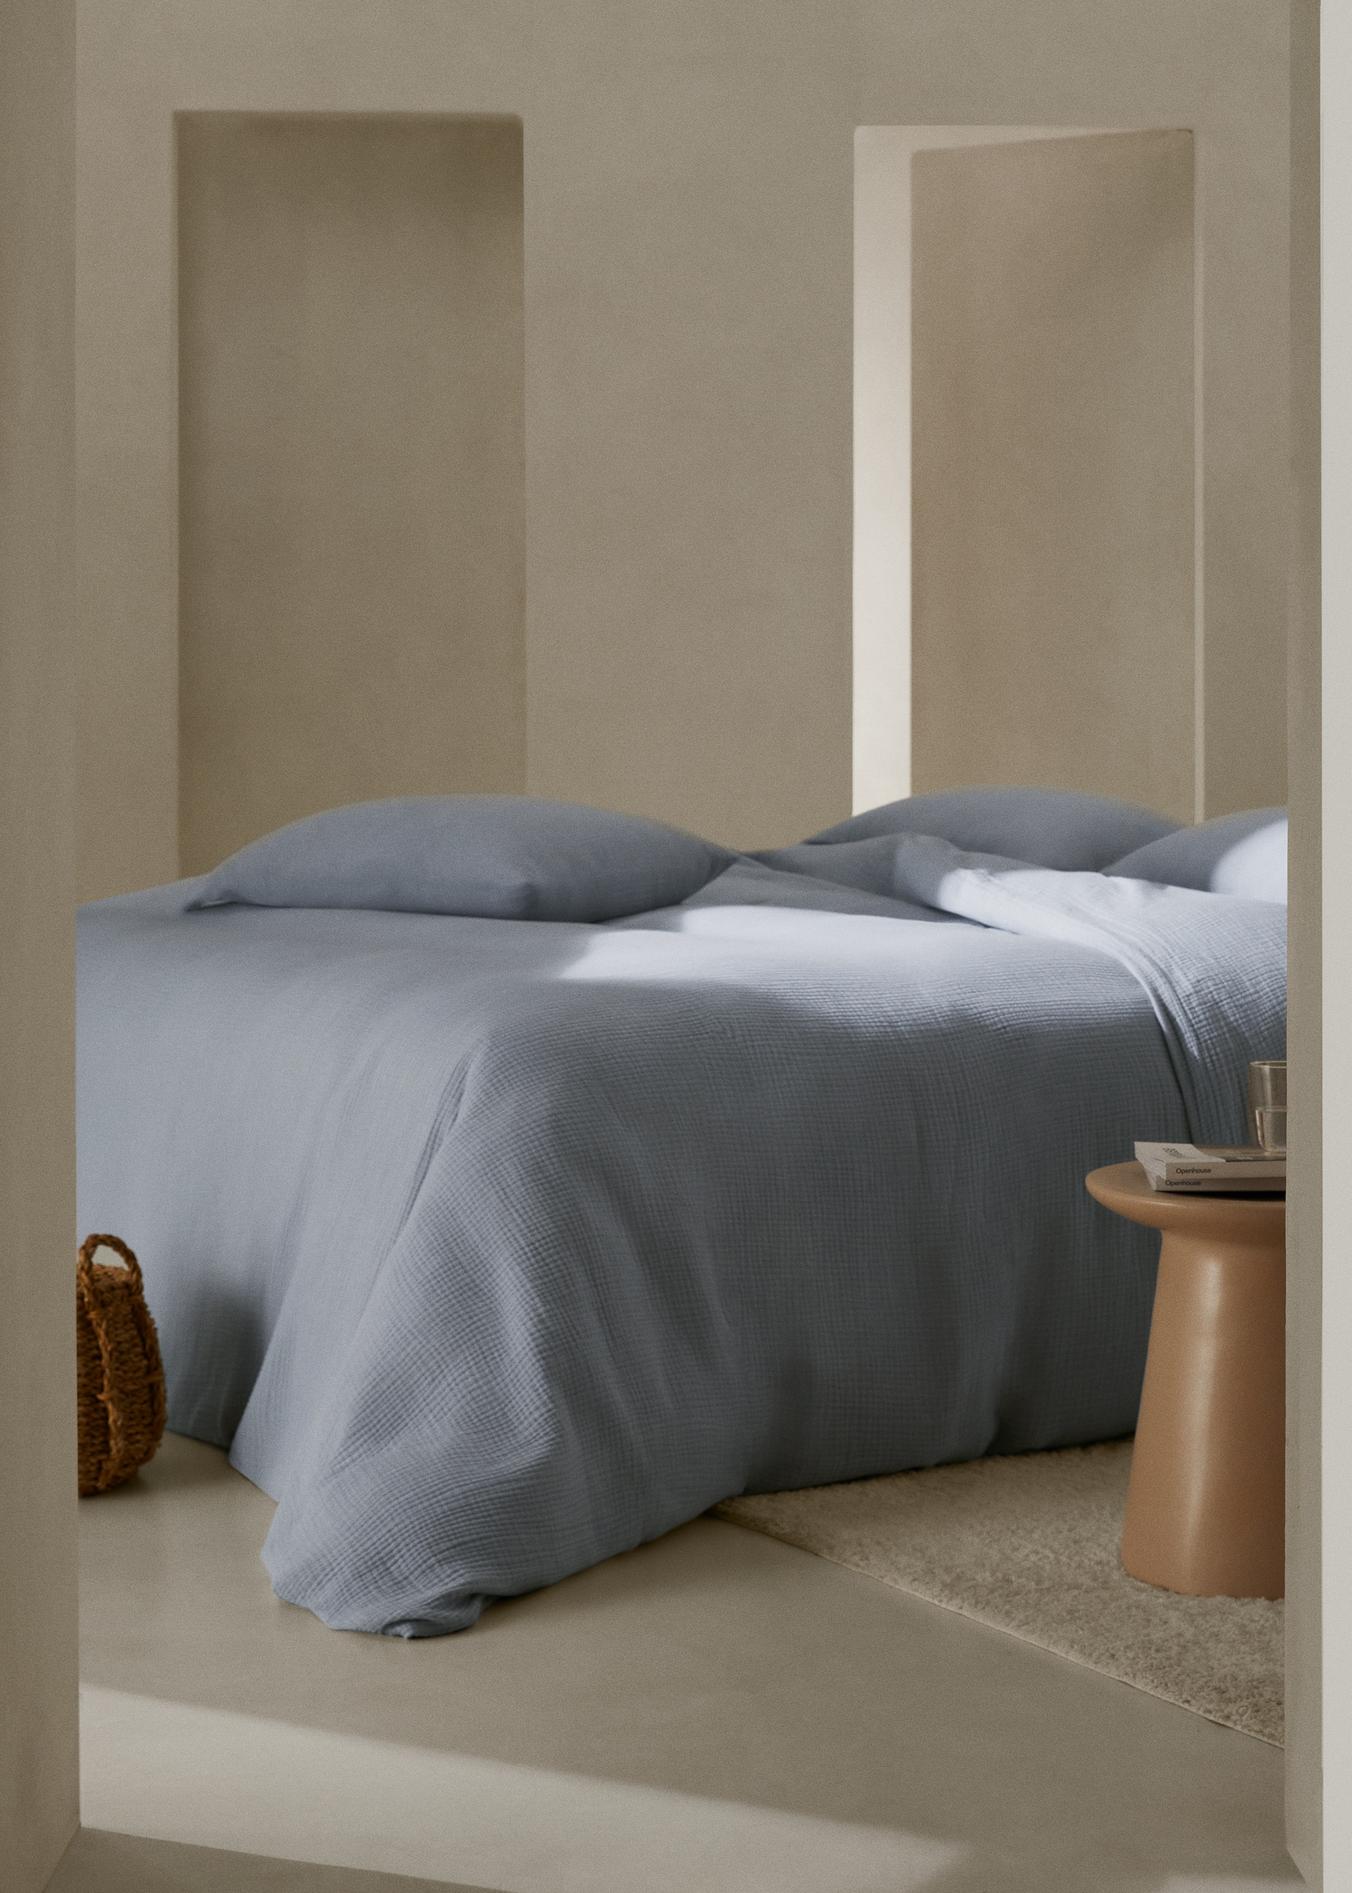 Bettbezug aus Baumwoll-Gaze für 150 cm Bett für 47,99€ in Mango